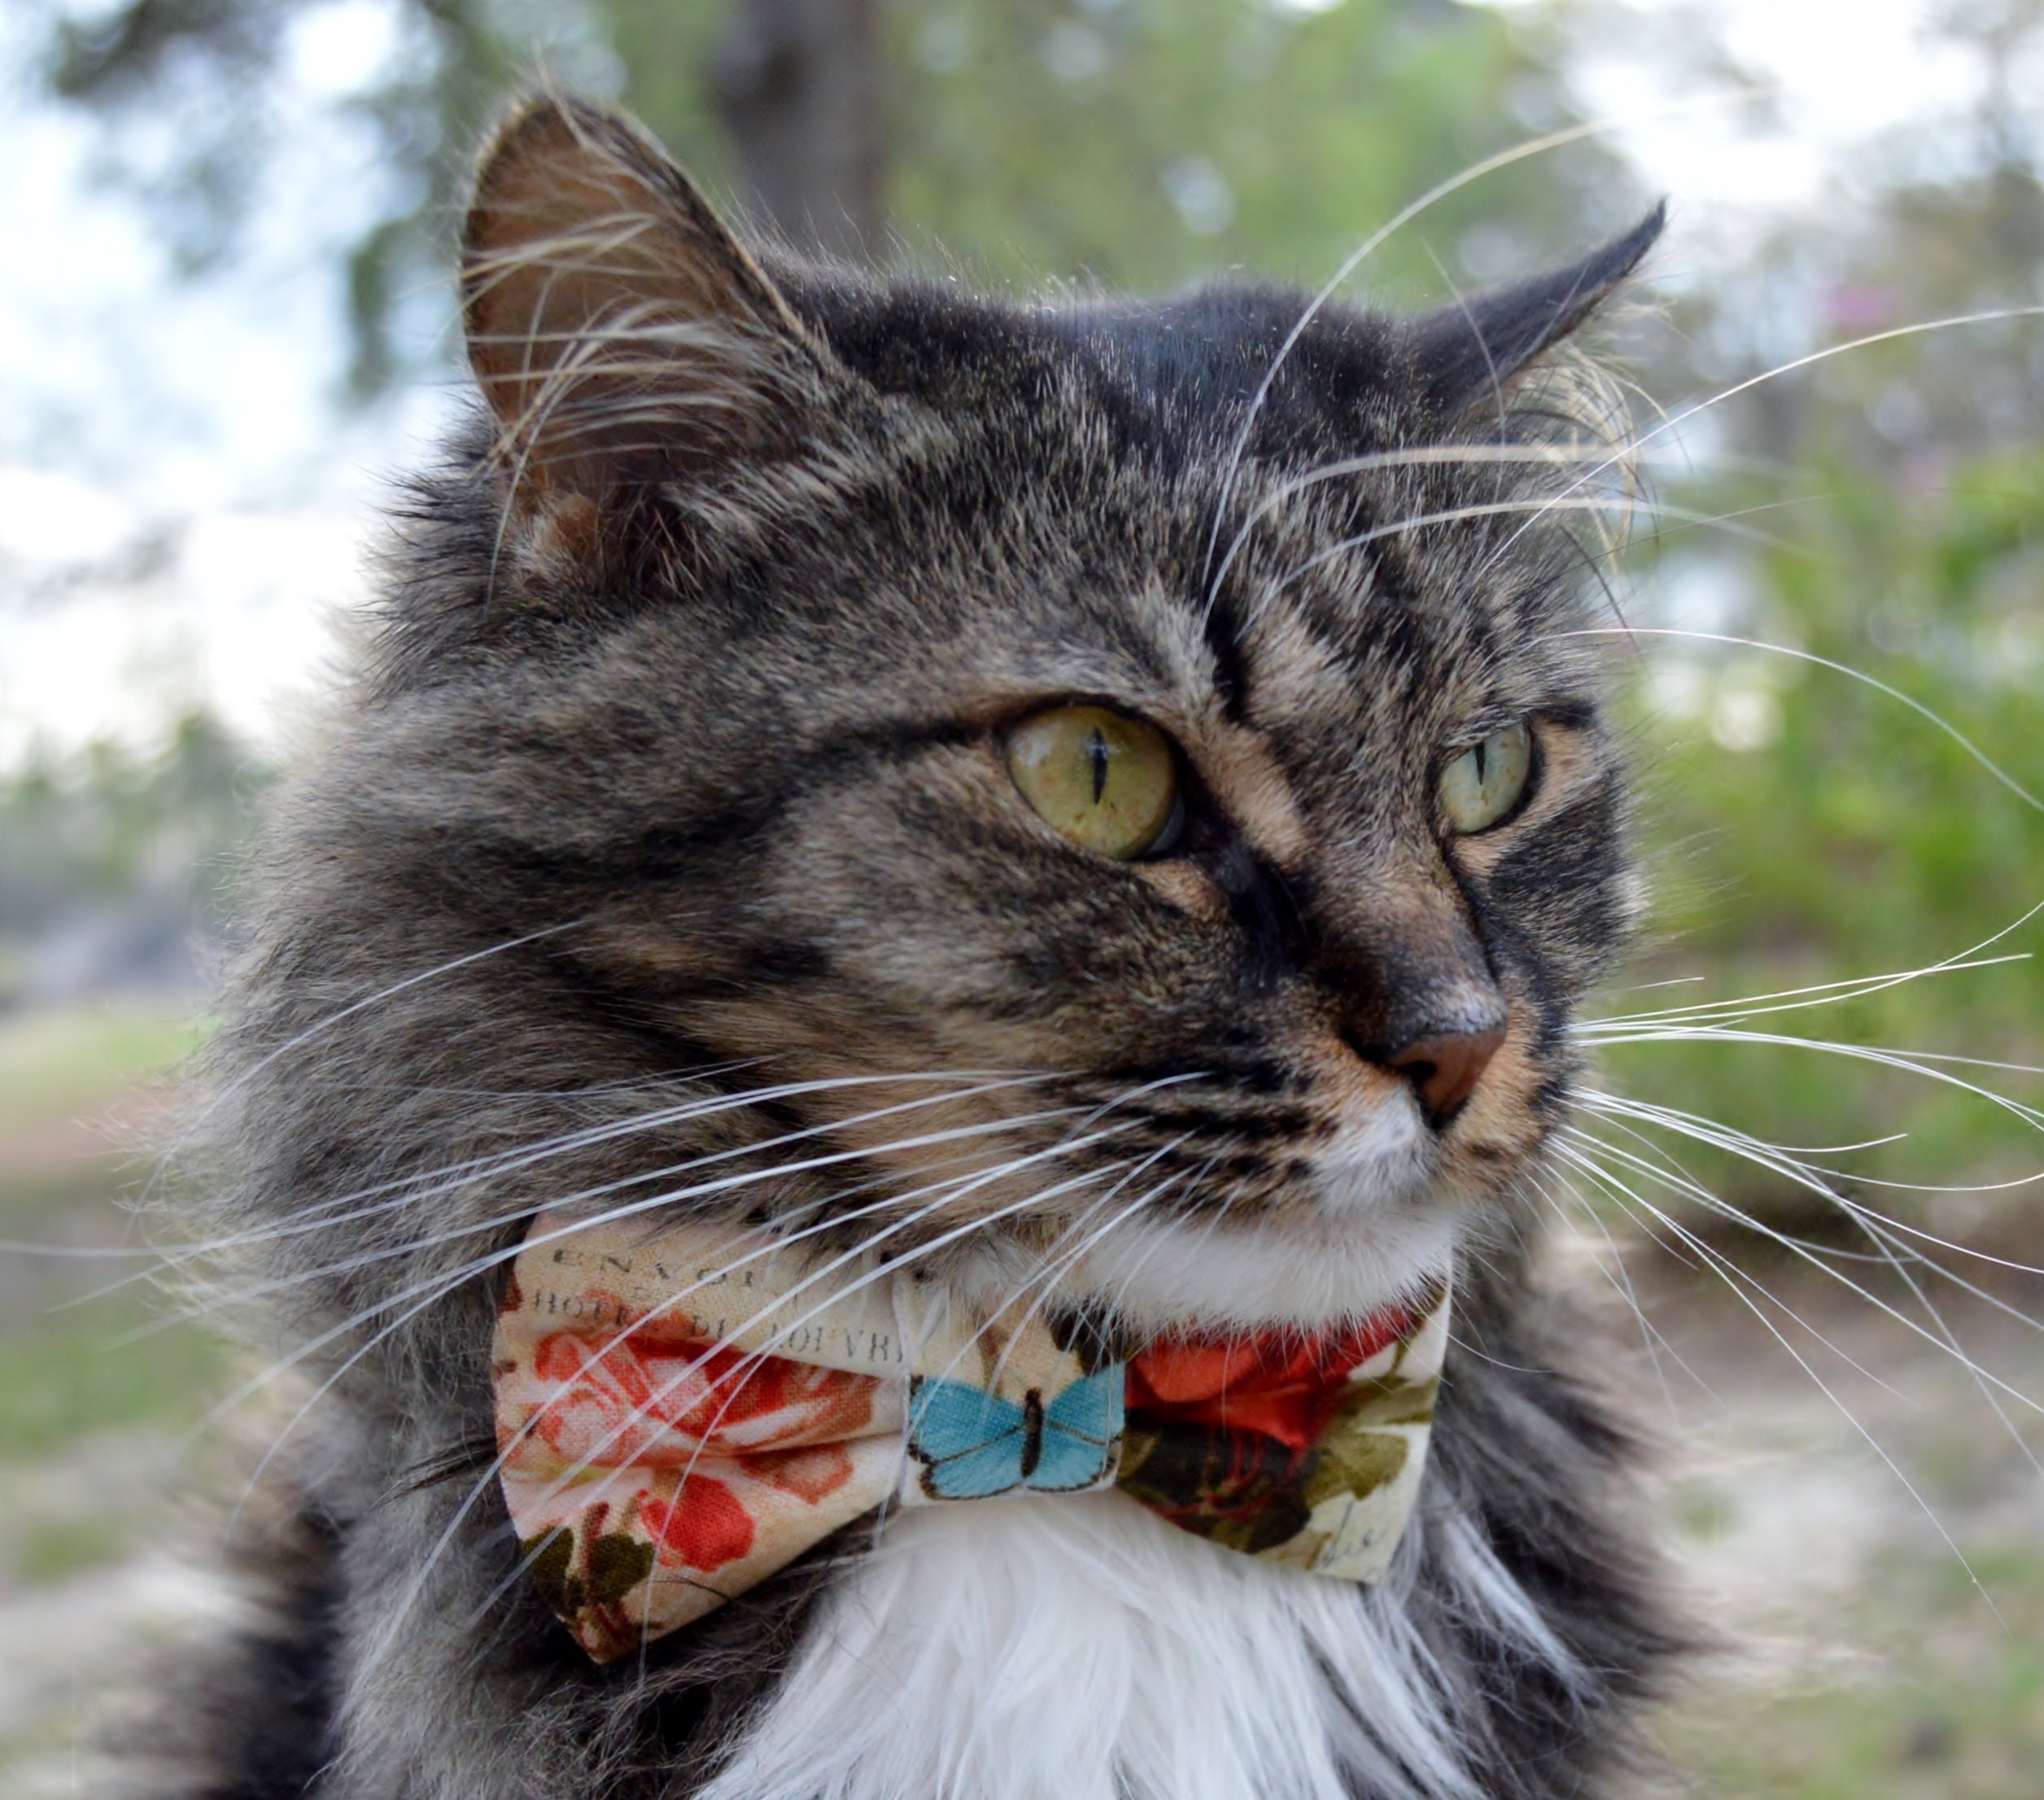 Brown Designer Cat Collar Breakaway - Bow tie Removable Kitten